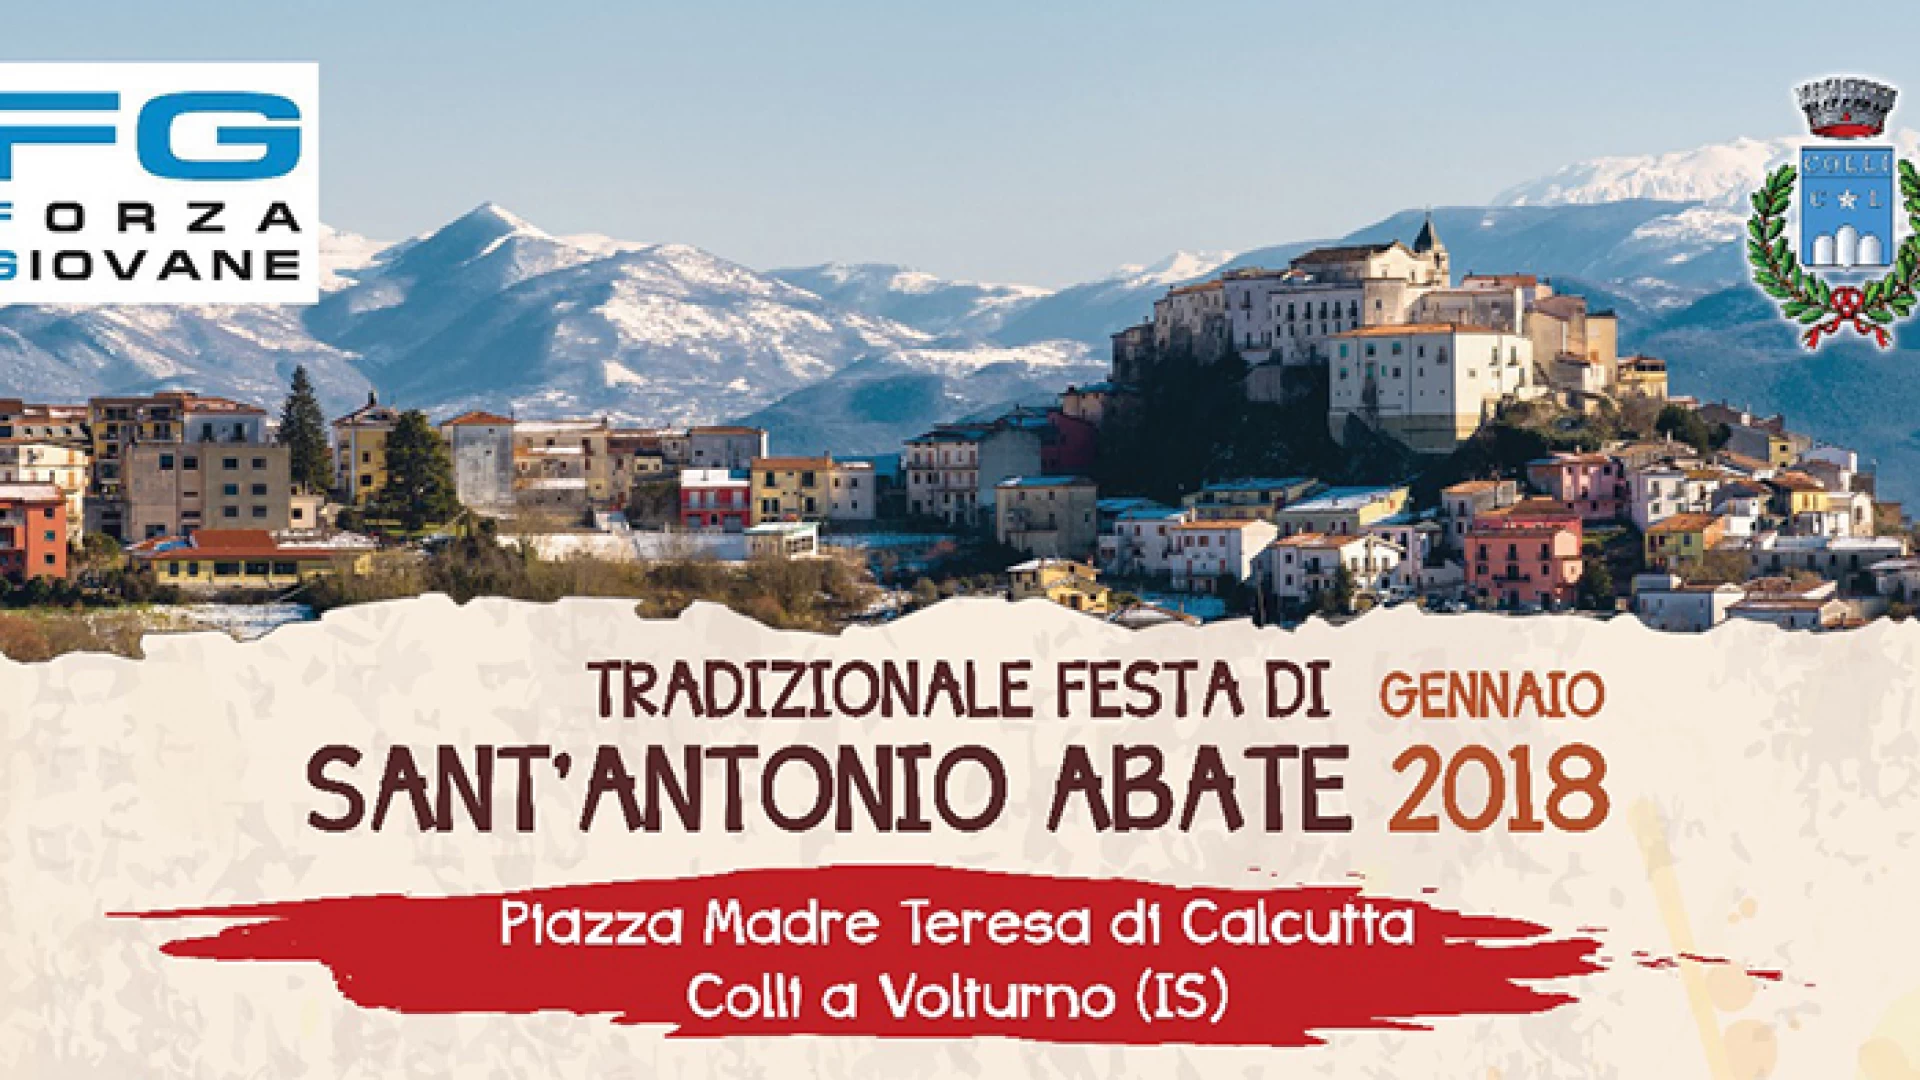 Colli a Volturno: appuntamento con la festa tradizionale di Sant’Antonio Abate. Un mega programma per l’associazione socio-culturale “Forza Giovane”.